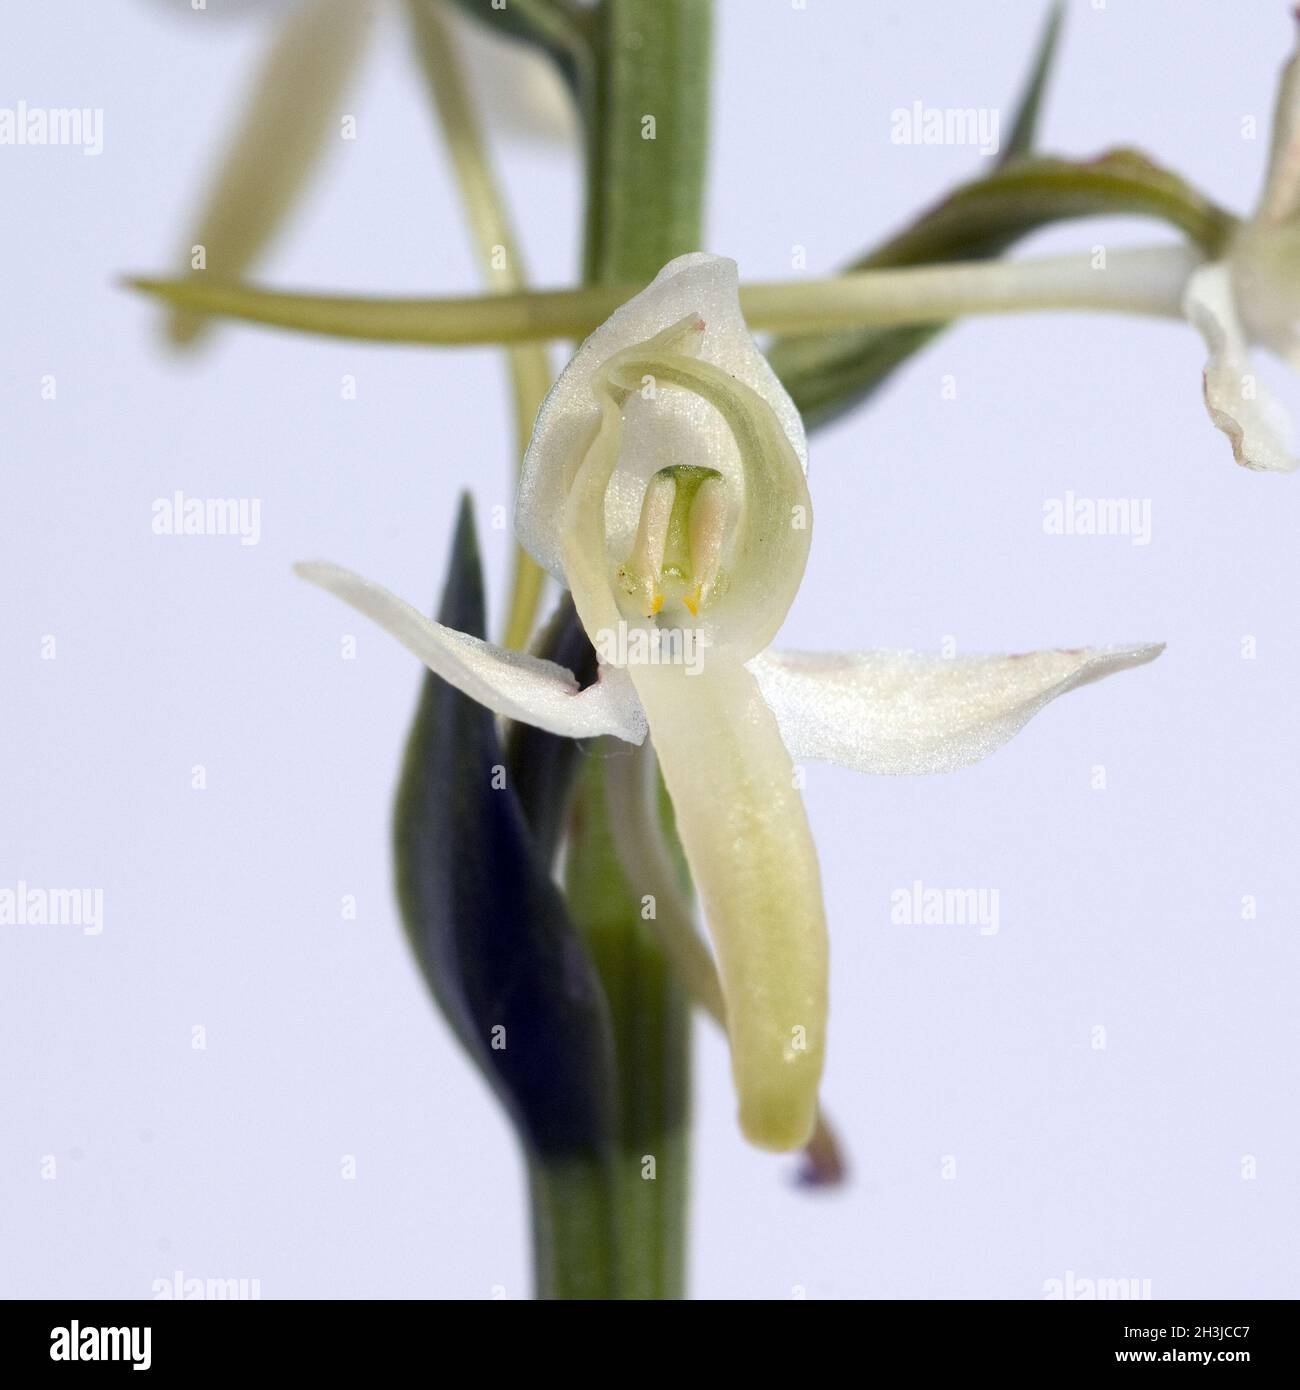 Gruene Waldhyazinthe, Platanthera chlorantha, Stock Photo